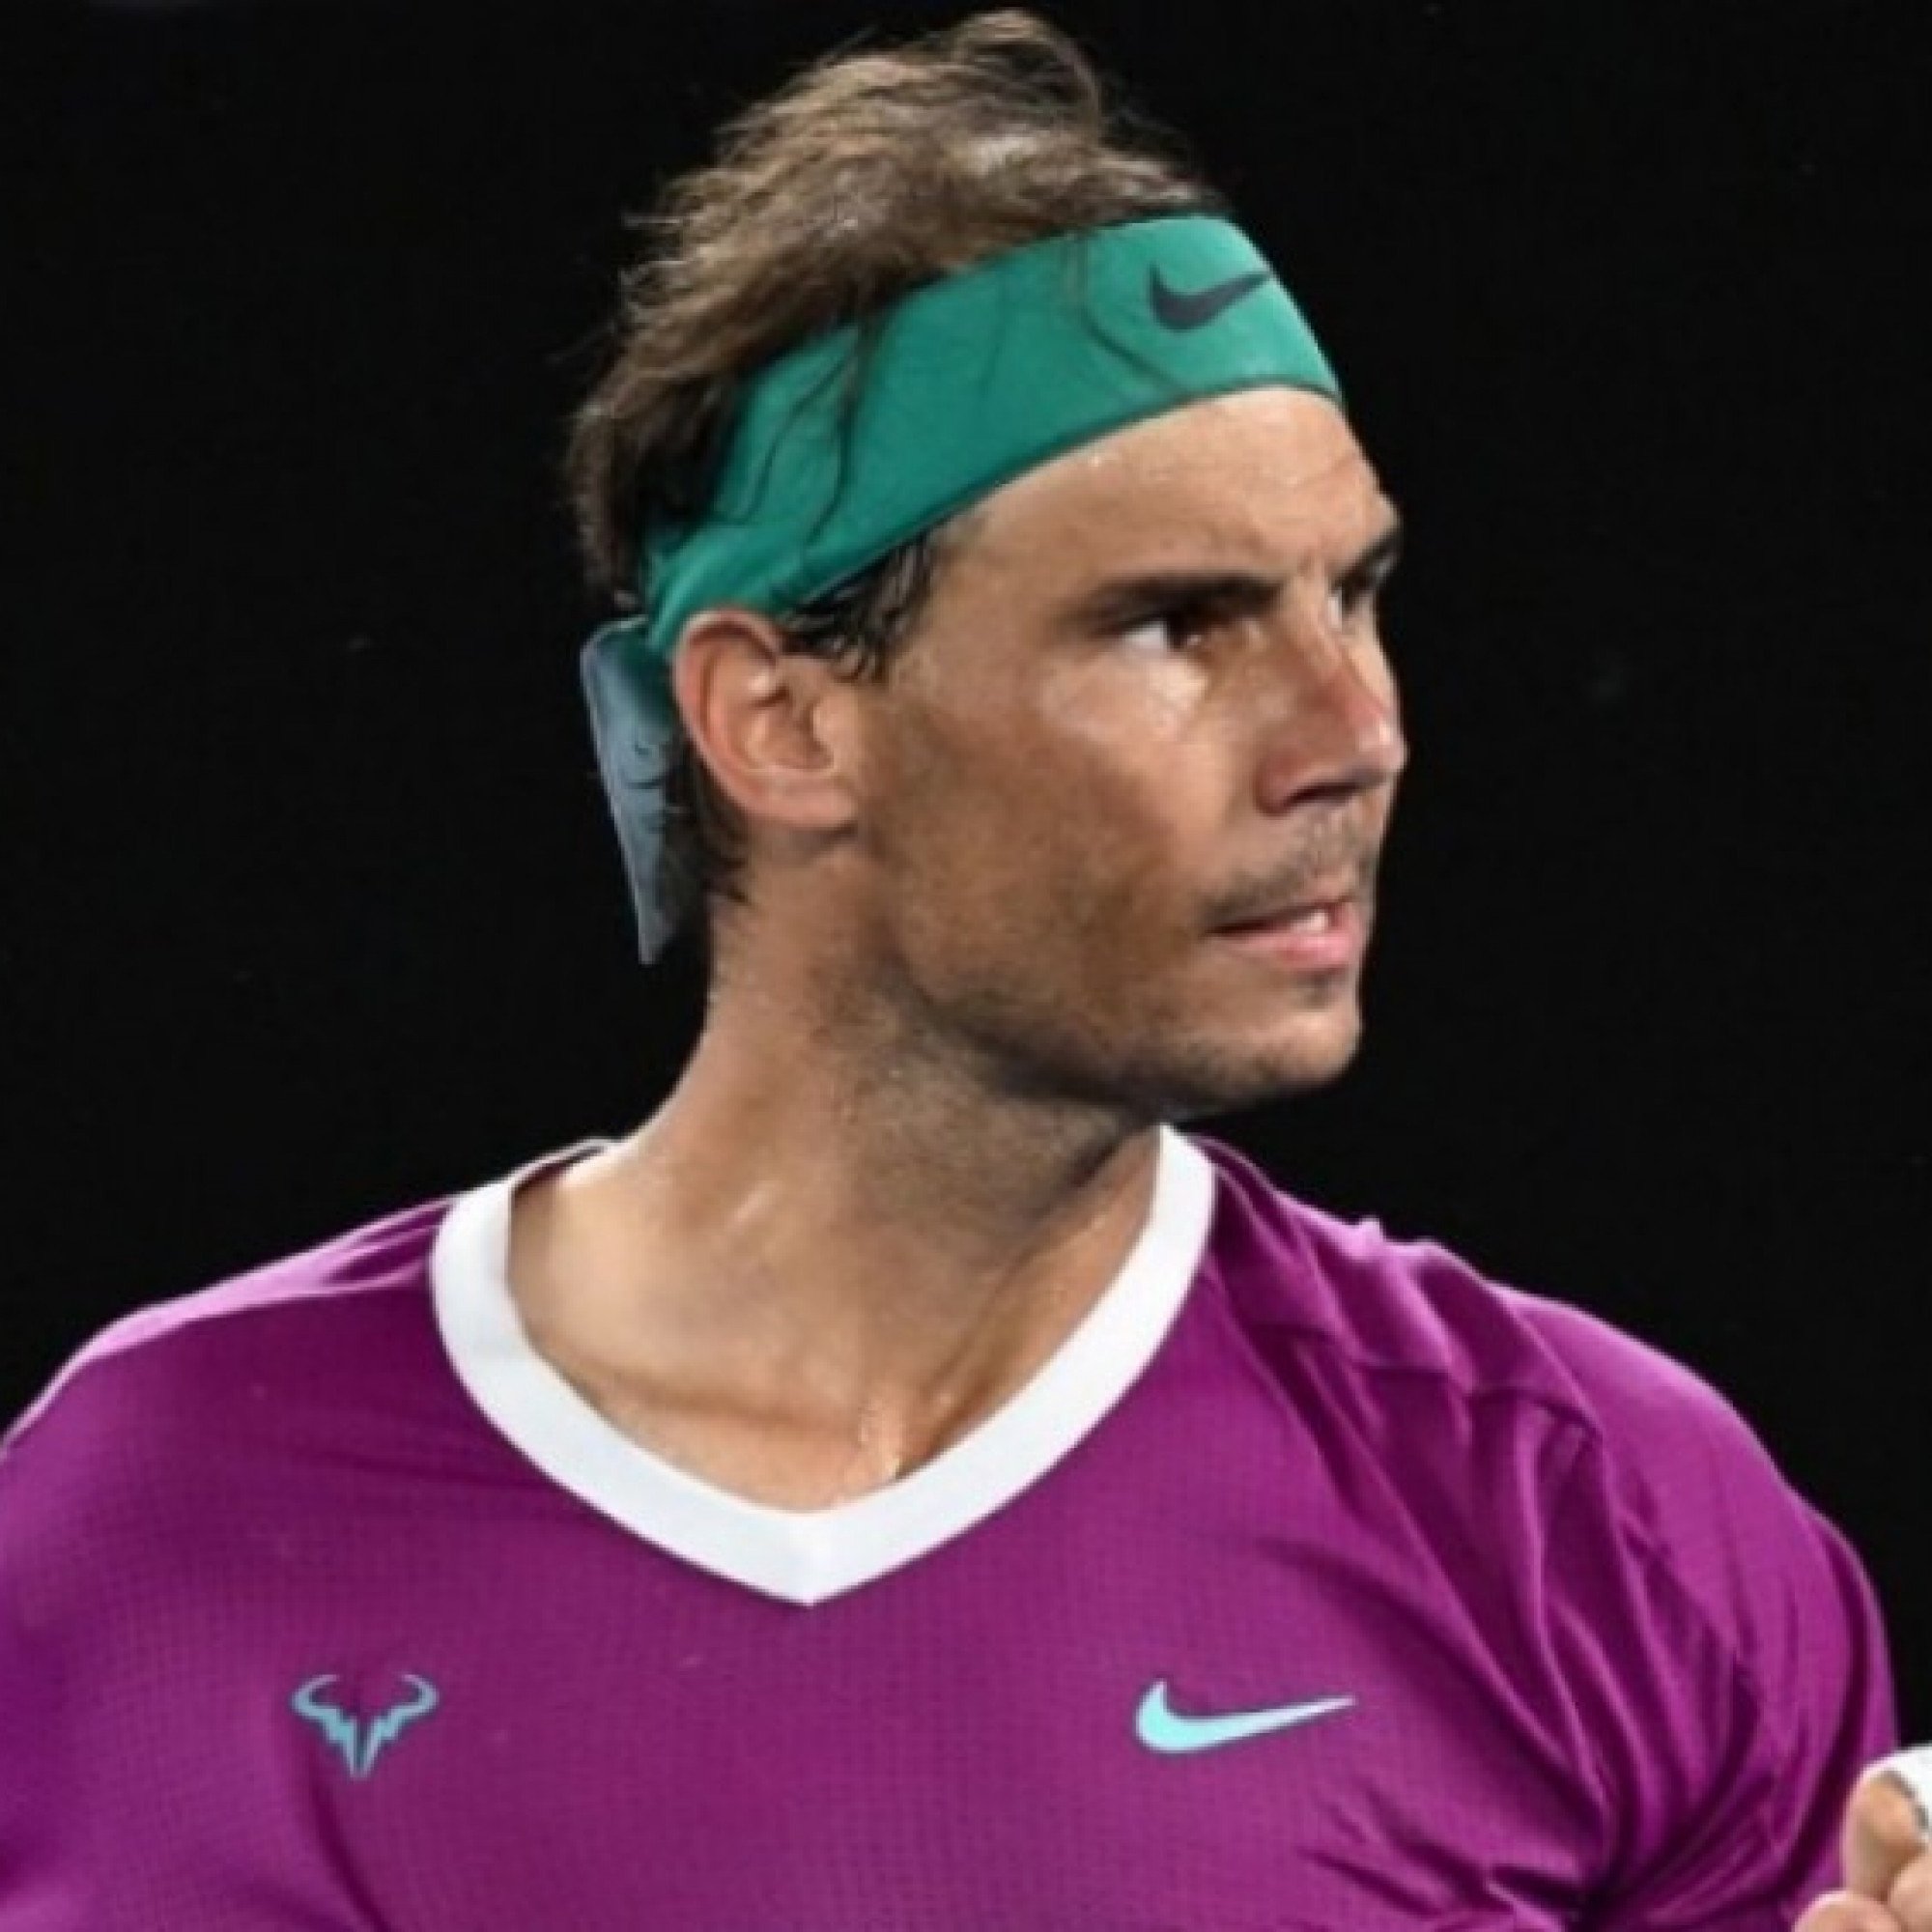  - Vượt "2 kẻ thù" của sự nghiệp, Nadal nỗ lực đến cùng tại Roland Garros